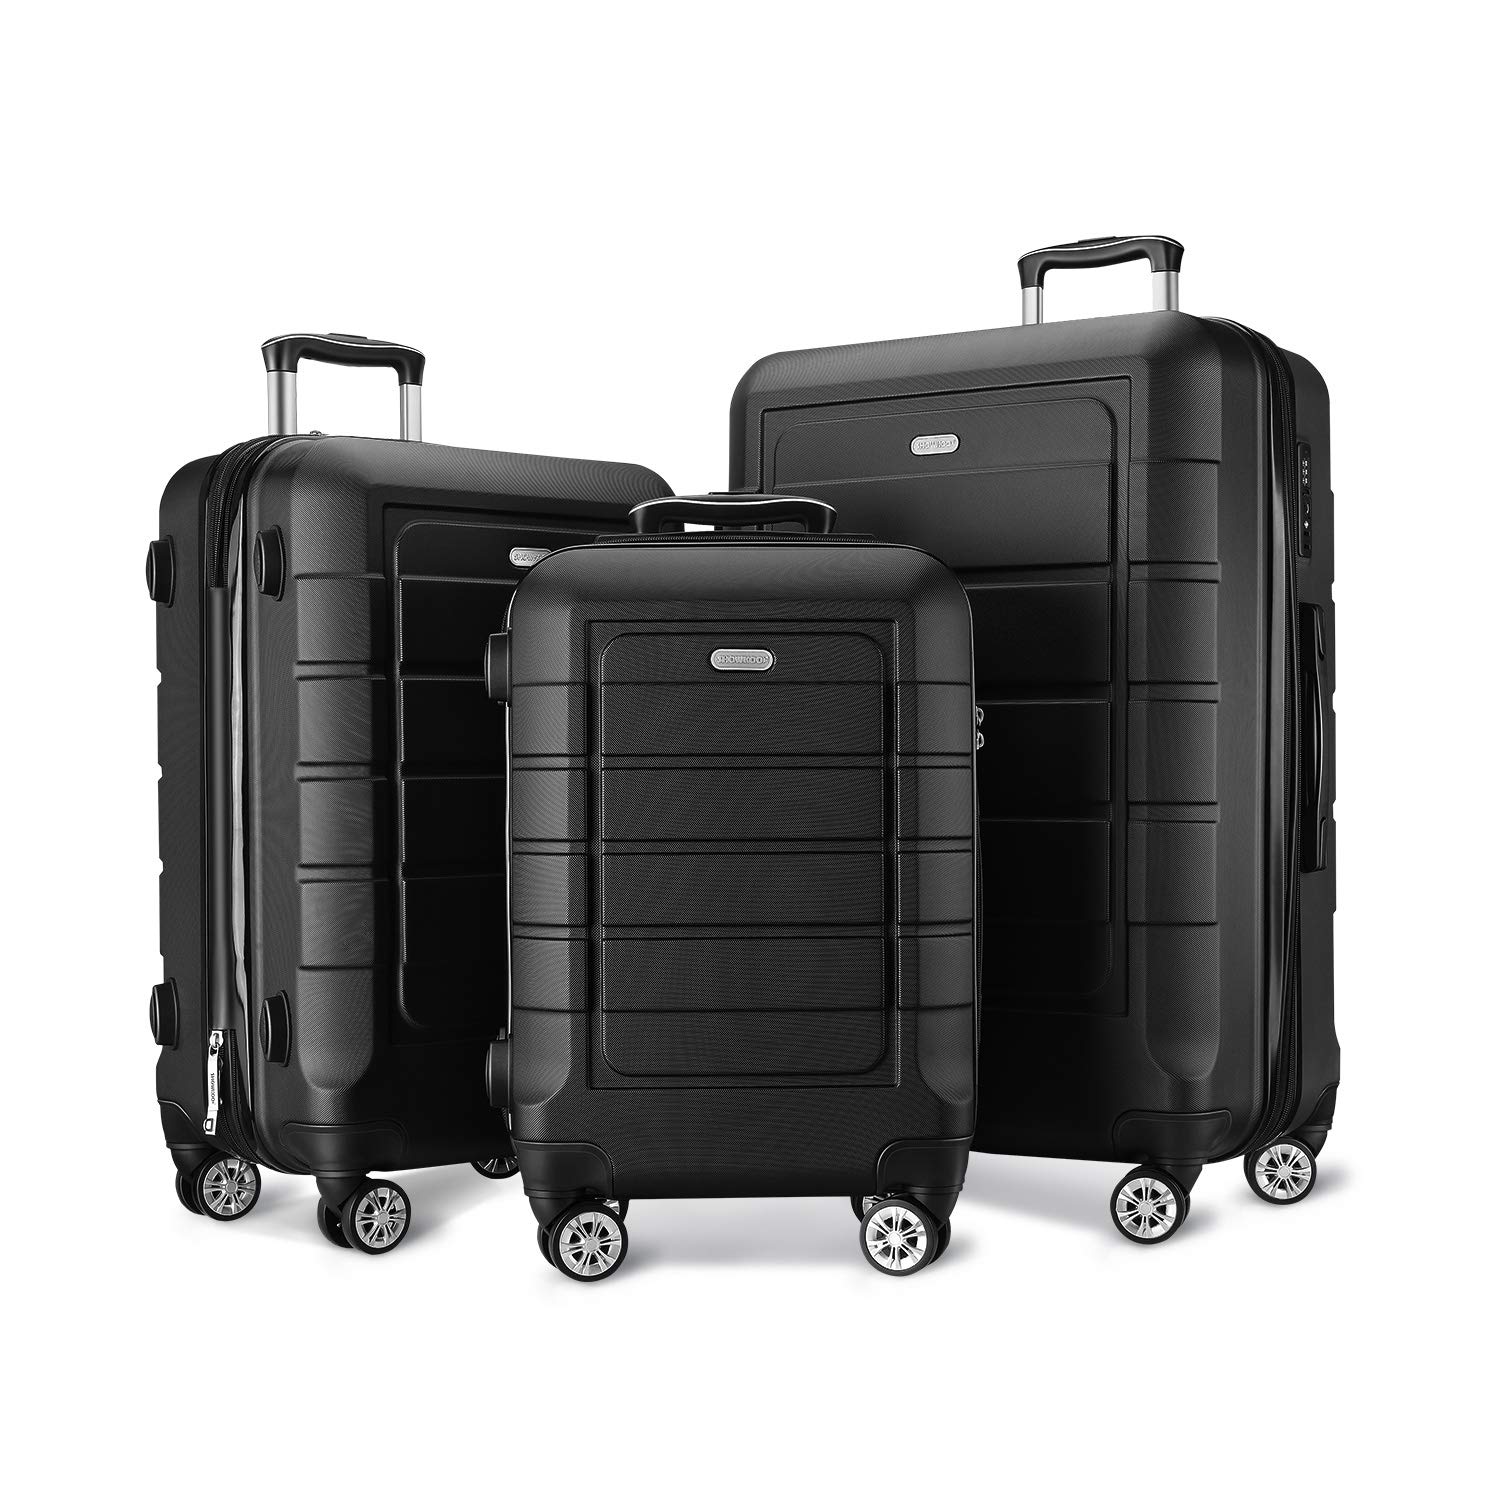 SHOWKOO Expandable Hardshell Luggage Set, 3-Piece